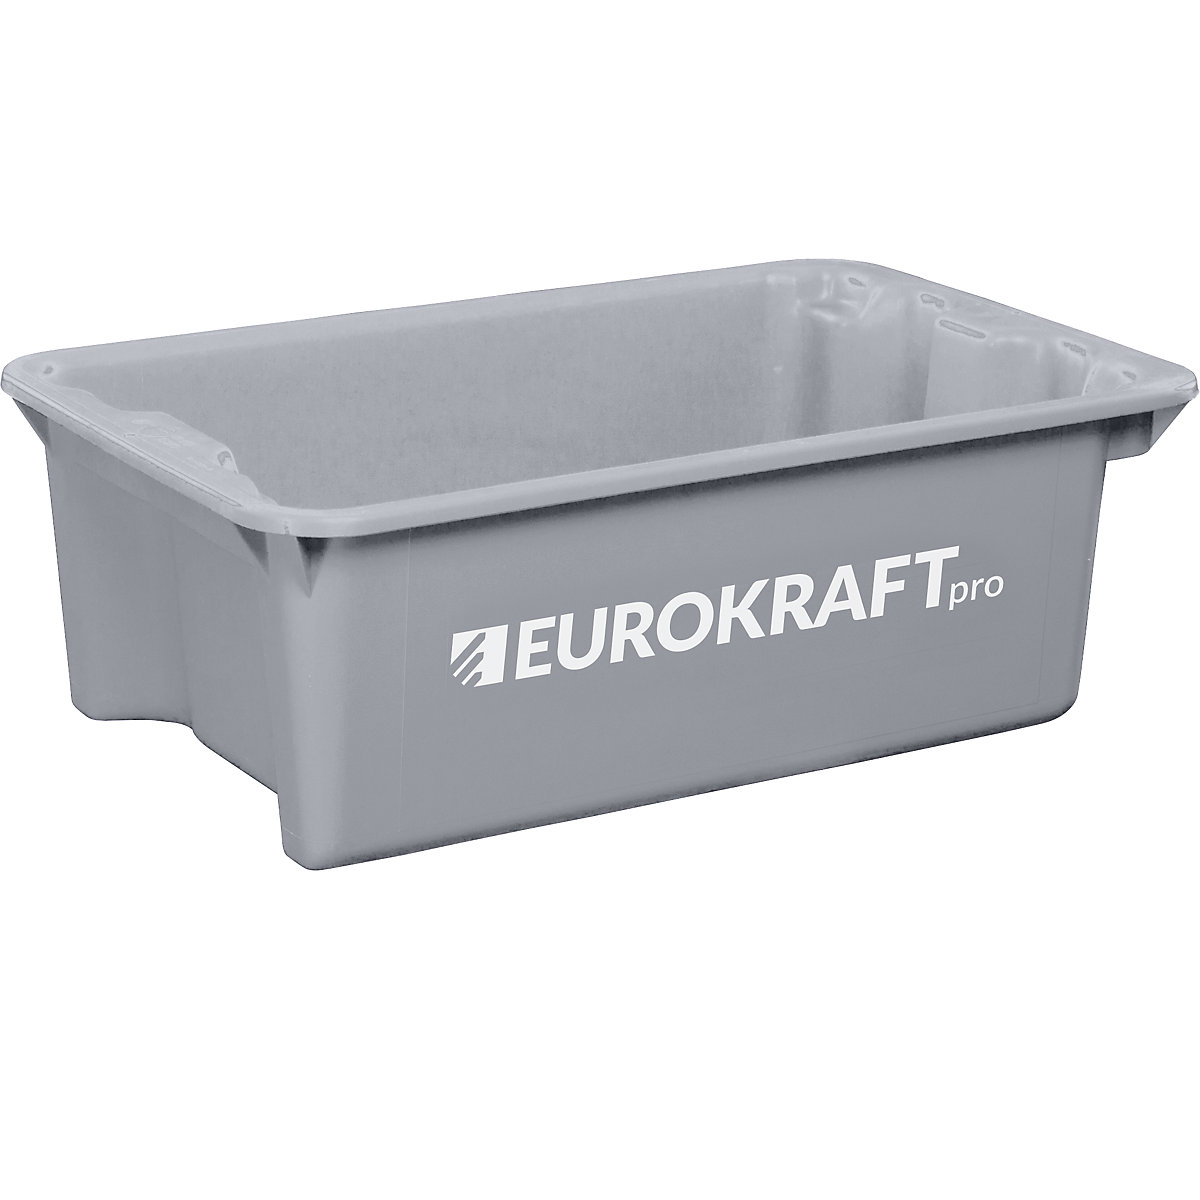 EUROKRAFTpro – Otočná stohovacia nádoba z polypropylénu vhodného pre potraviny, objem 34 litrov, OJ 3 ks, steny a dno uzatvorené, šedá